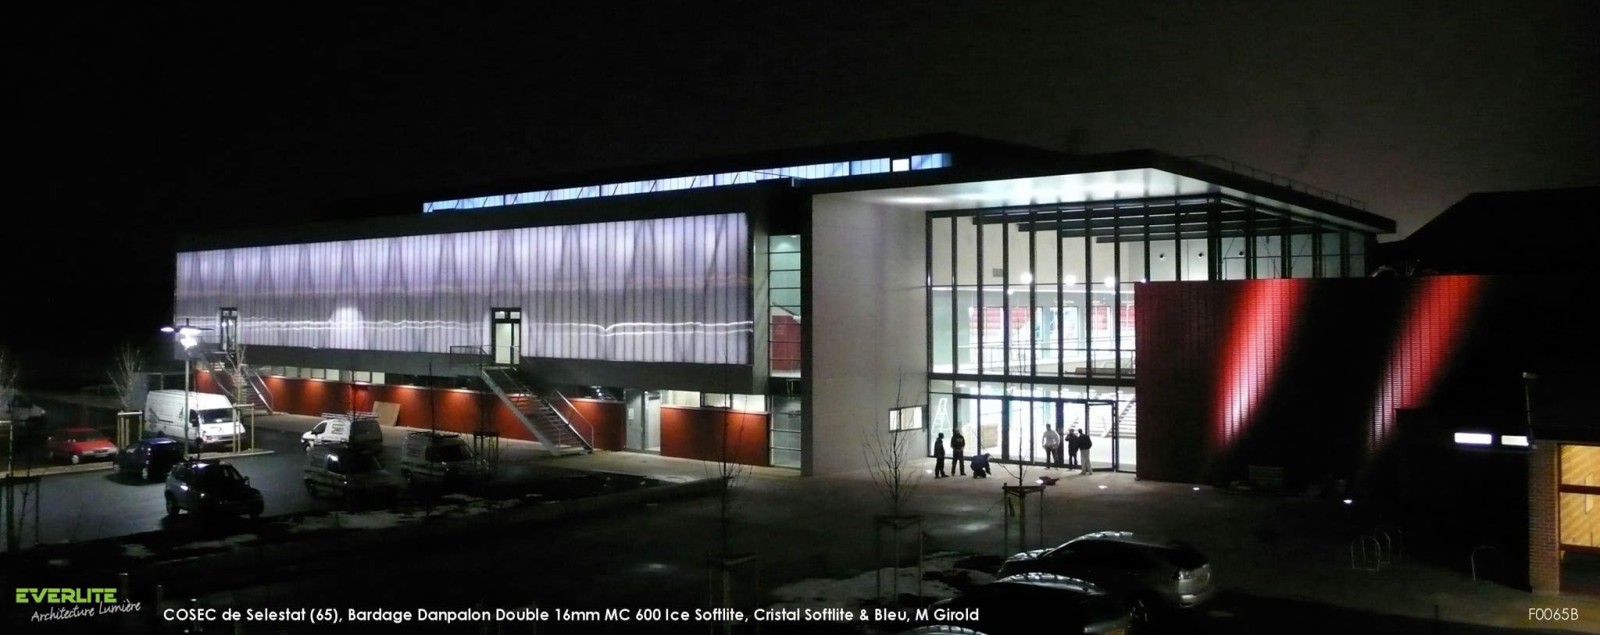 Salle de sport le COSEC à Selestat (65) Image 1